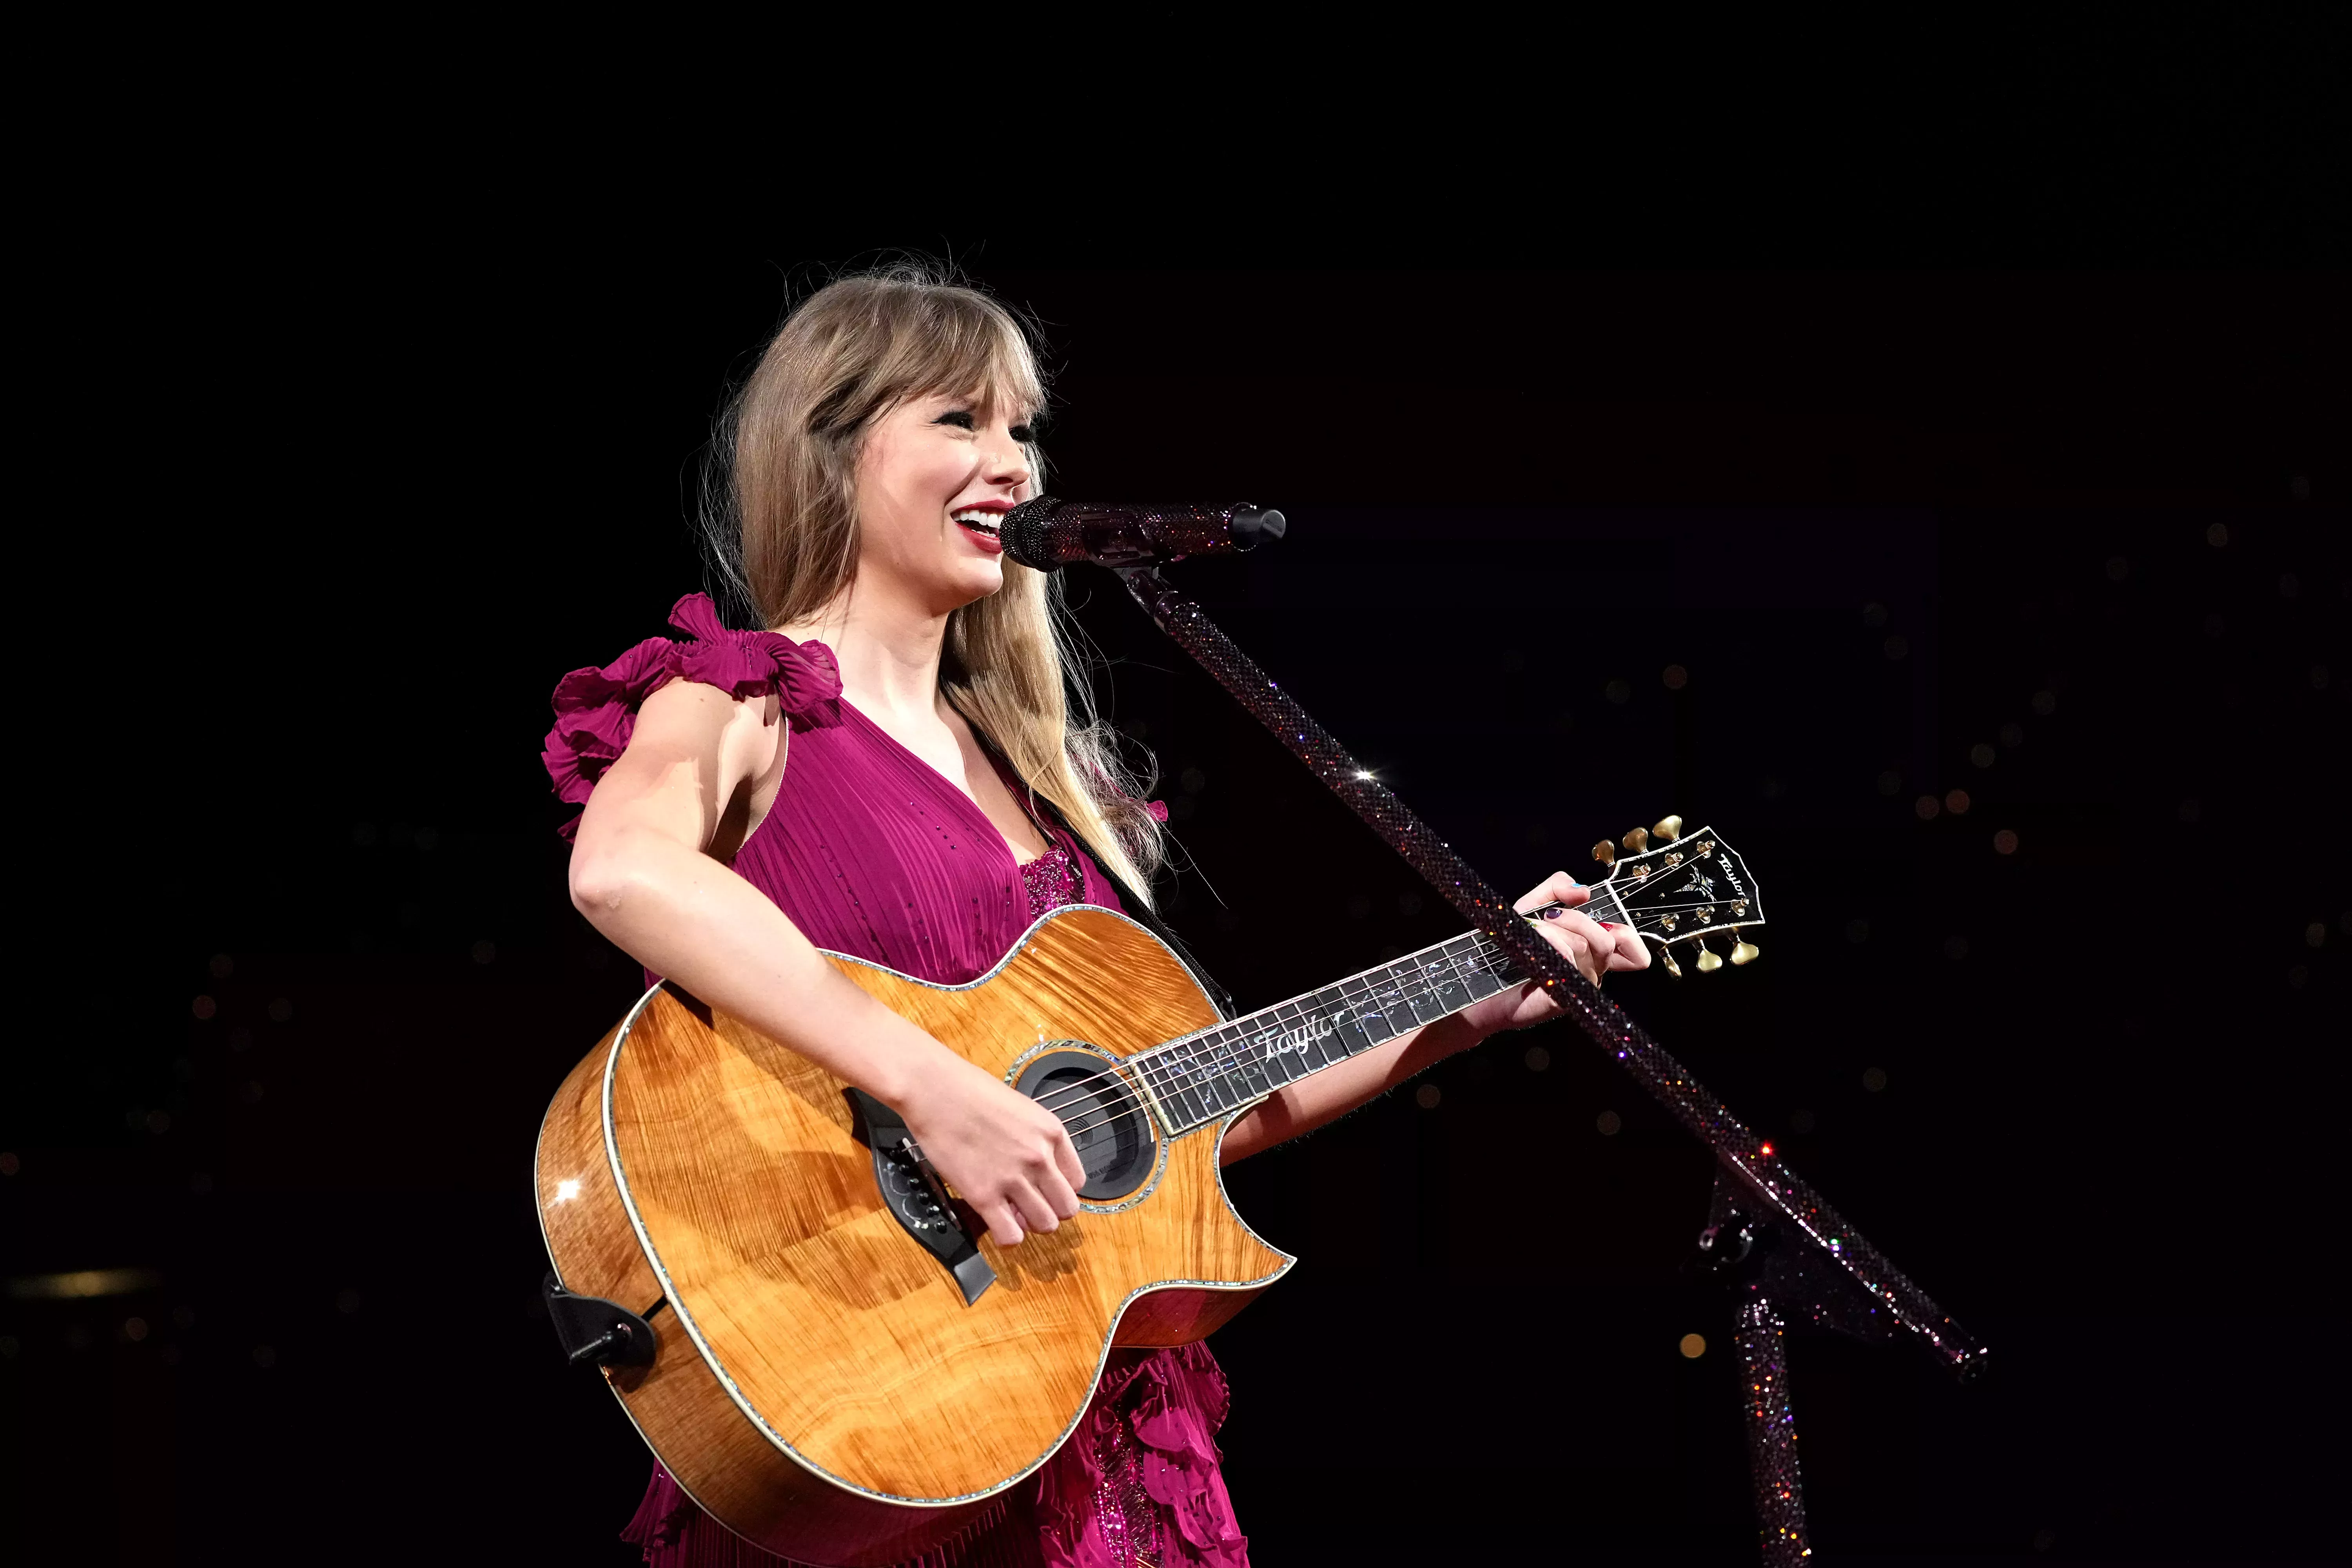 

	
		Gira Eras de Taylor Swift: Todas las canciones sorpresa que ha tocado hasta ahora
	
	